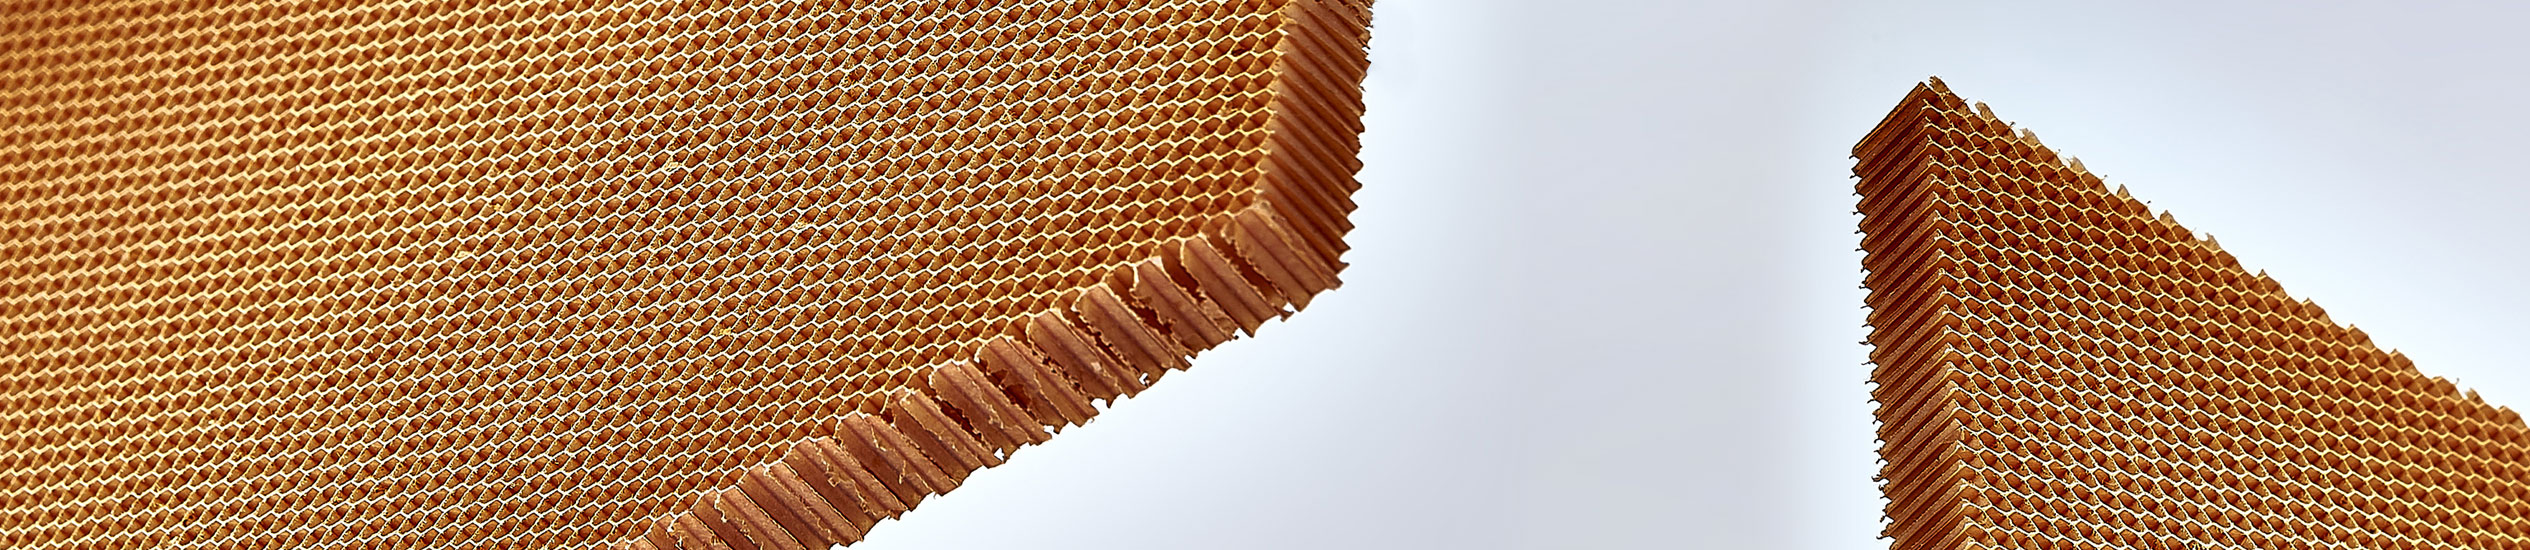 Il nido d'ape in Nomex® è un prodotto non metallico, leggero e resistente realizzato con carta aramidica. È usato principalmente nel settore aeronautico.